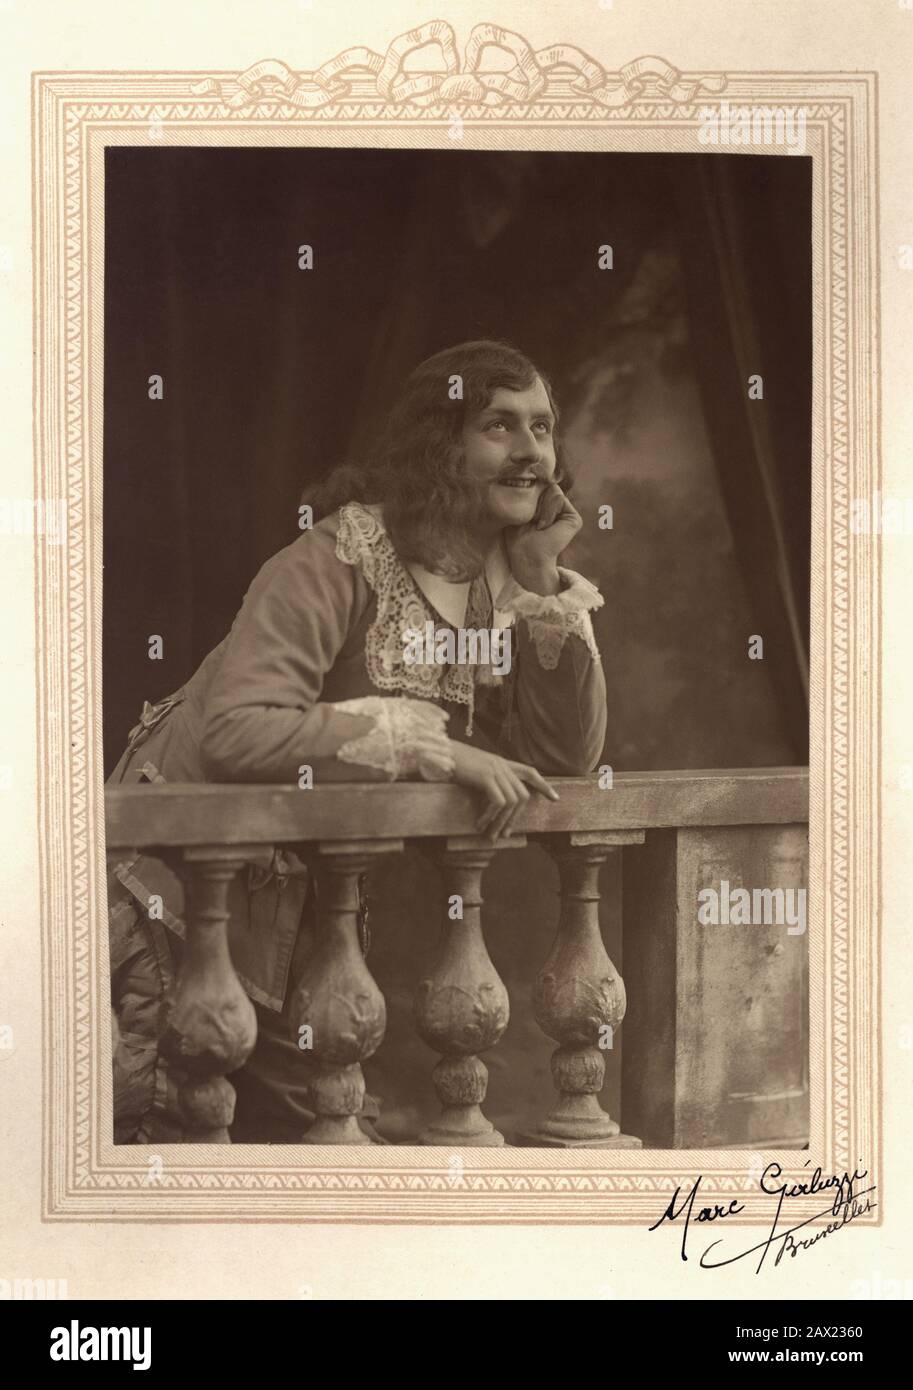 1920 ca , Bruxelles , BELGIUM : The french theater actor  JEAN ARBULEAU ( Paris ,  1895 – 1979 ) in CYRANO DE BERGERAC  by Edmond Rostand ( 1868 - 1918 ) . Photo by Marc Galuzzi , Bruxelles - TEATRO - THEATRE - THEATER - baffi - moustache - pizzo - lace - scene costume - abito costume di scena - long hair man - uomo capelli lunghi - smile - sorriso - GAY - HOMOSEXUAL - HOMOSEXUALITY - OMOSESSUALE -   omosessualità - LGBT - dreamer - sognatore - lover - innamorato  ---- Archivio GBB Stock Photo